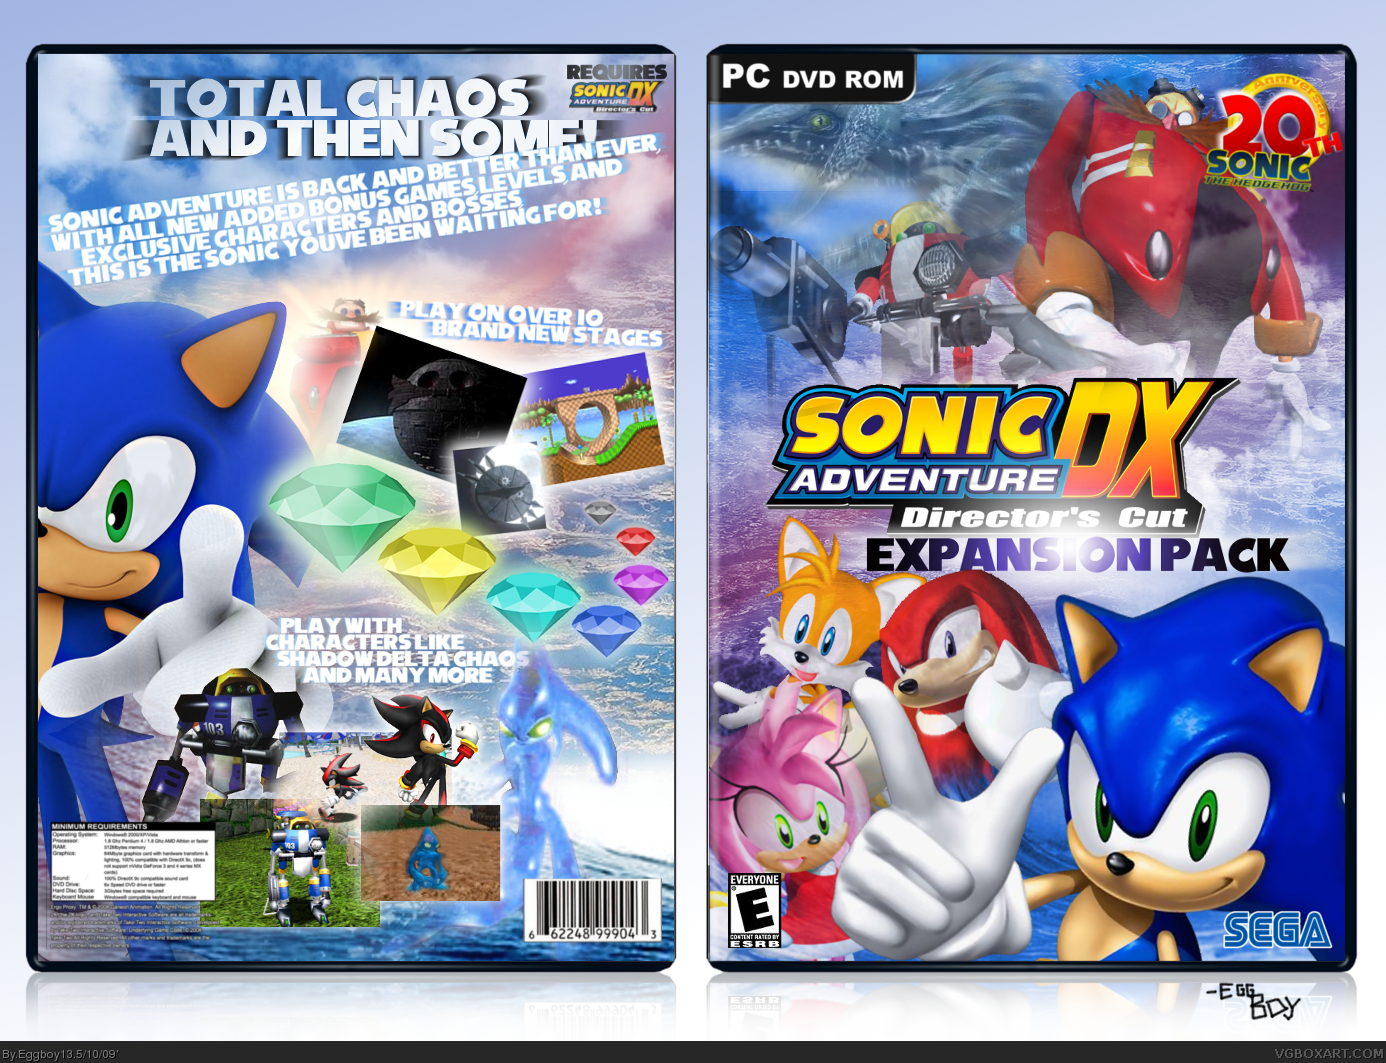 Sonic adventure играть. Sonic Adventure DX диск. Sonic Adventure 2 диск. Sonic Adventure диск Sega. Sonic игр антология диск 1.